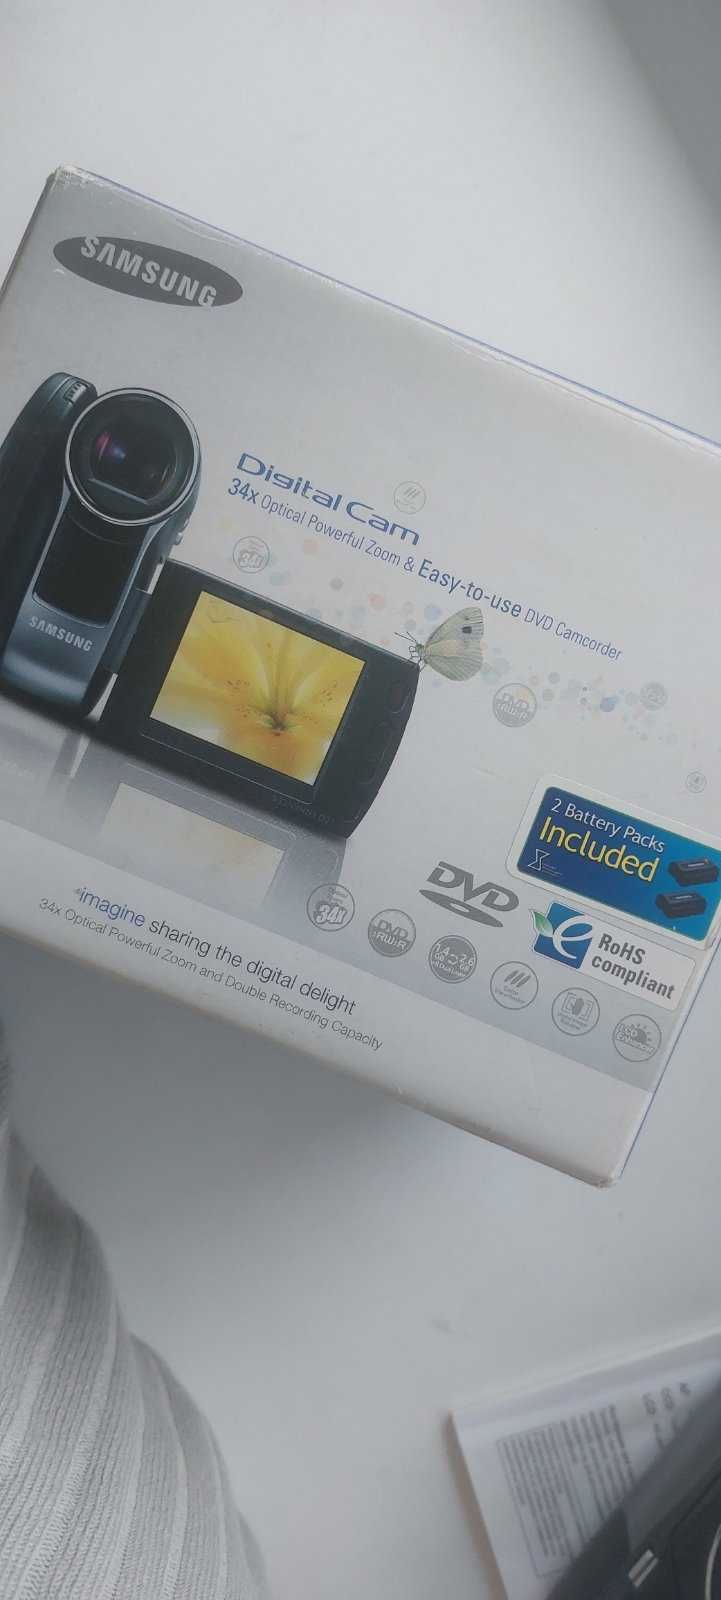 Продам видеокамеру SAMSUNG digital cam 34x DVD camcorder видеокамера